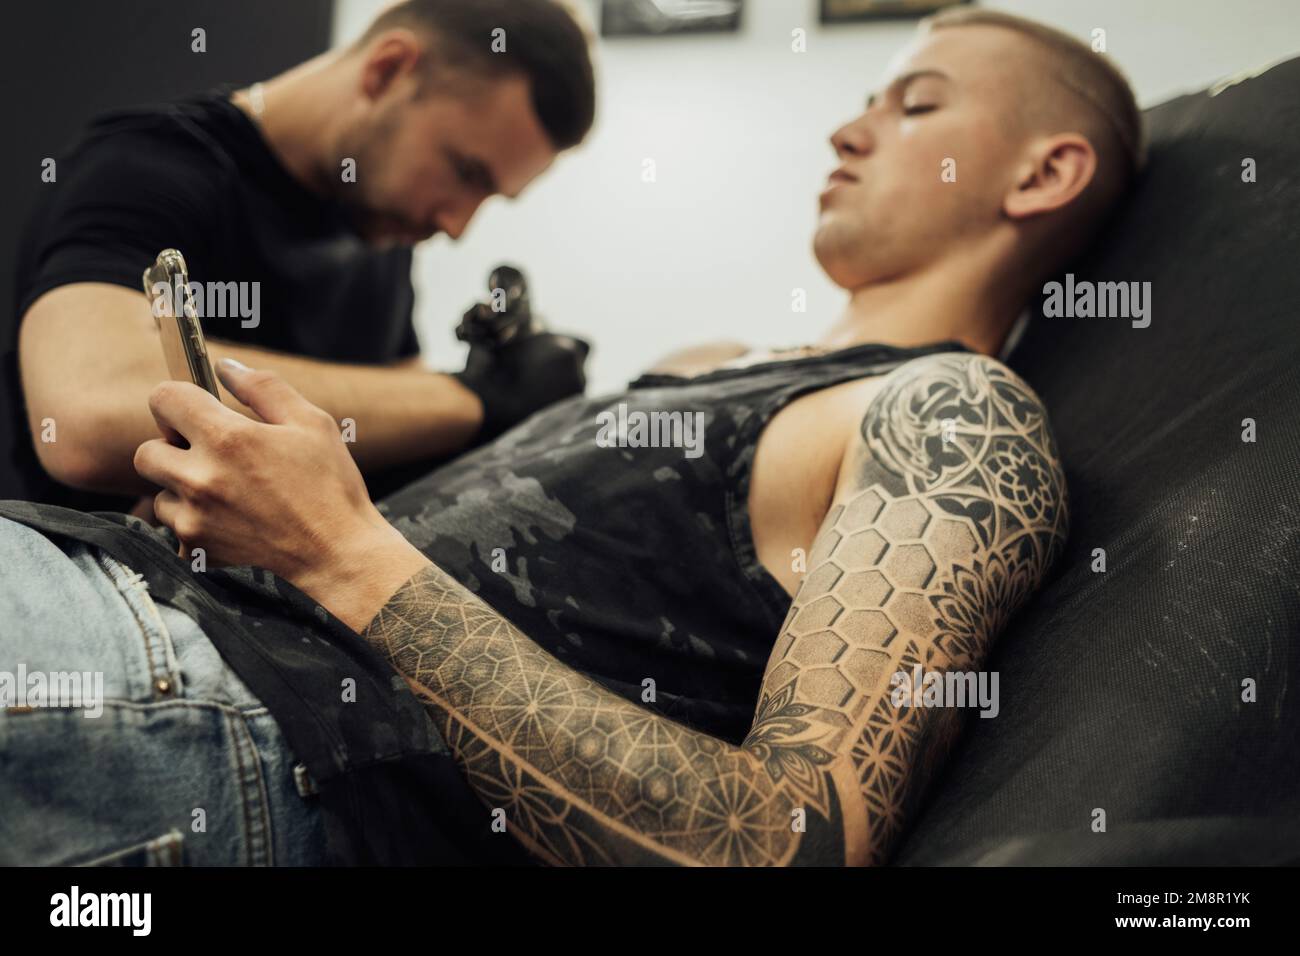 Uomo tatuato utilizzando lo smartphone durante la sessione di tatuaggio, artista maschile disegna sulla pelle dei clienti Foto Stock